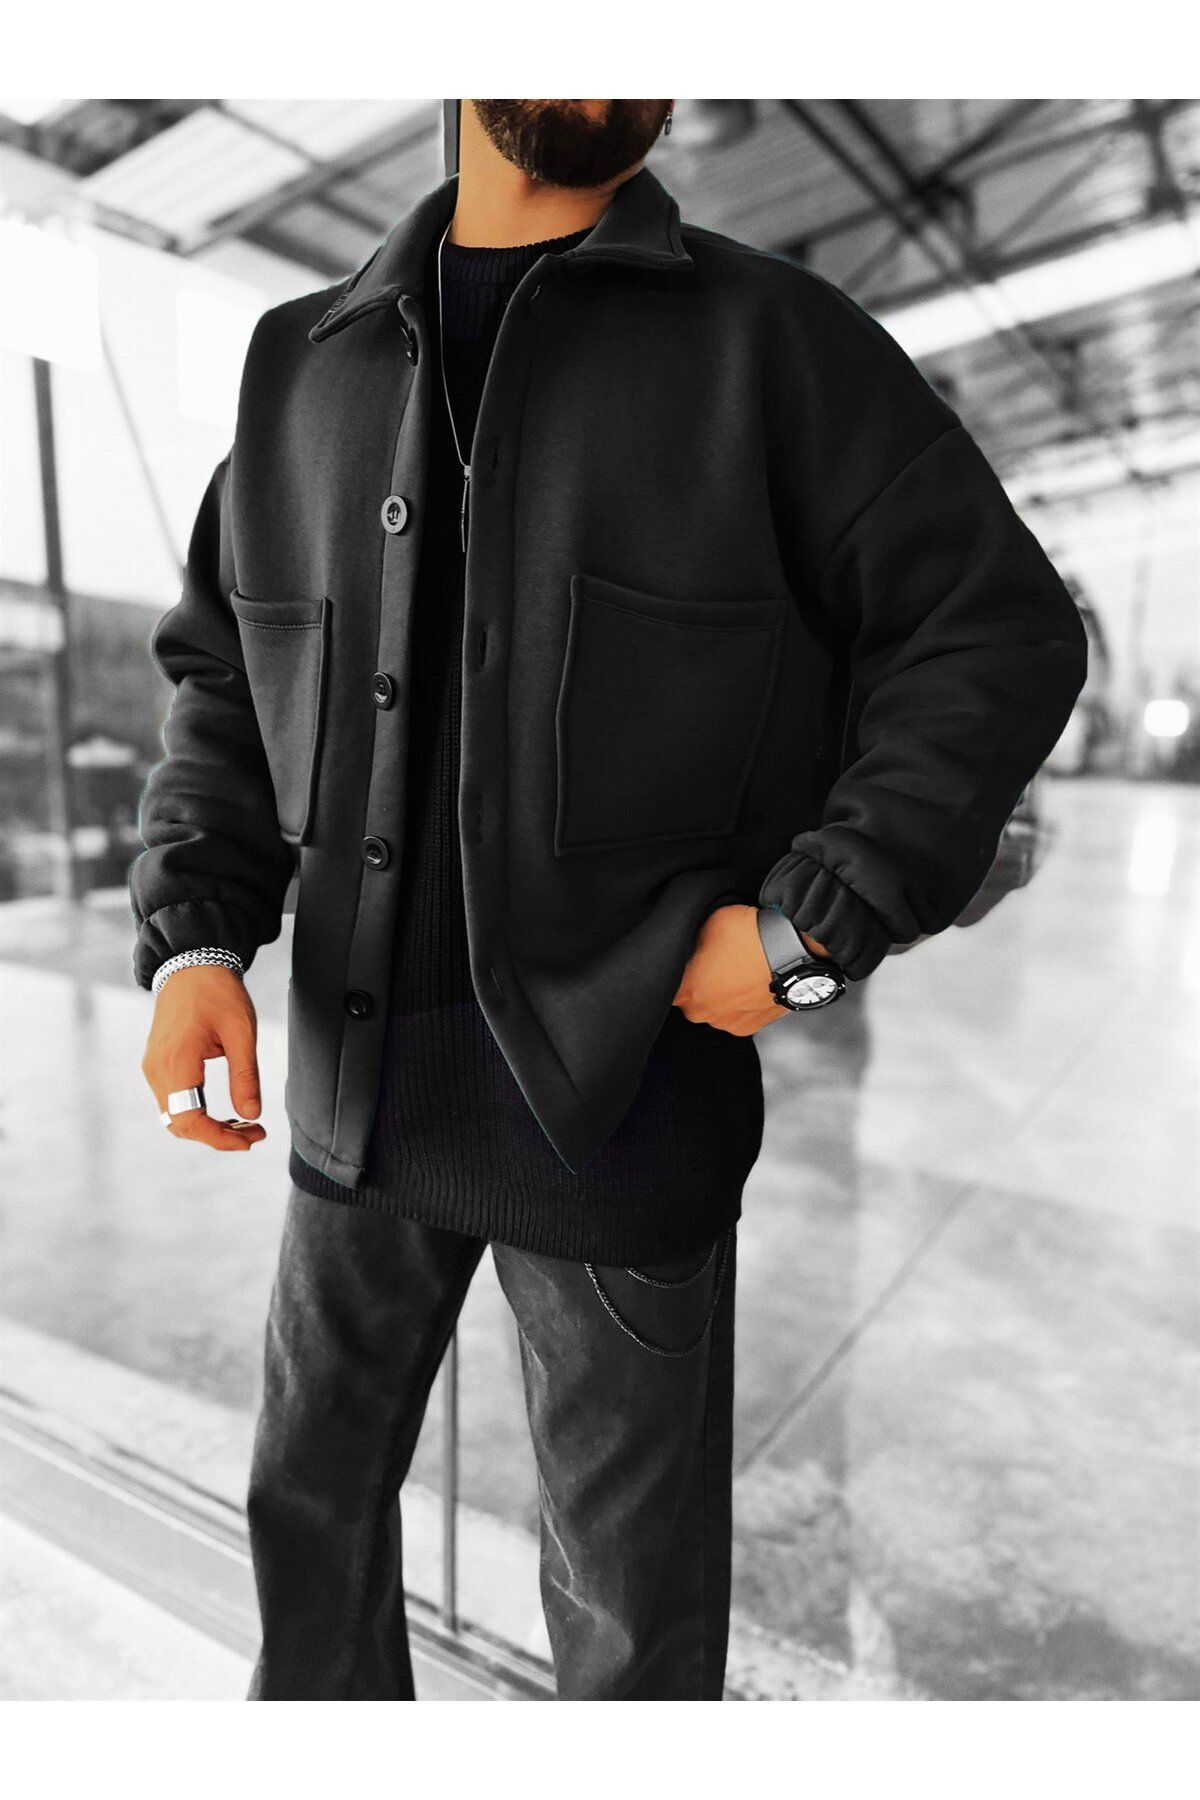 ablukaonline Oversize Basic Rahat Ceket Siyah